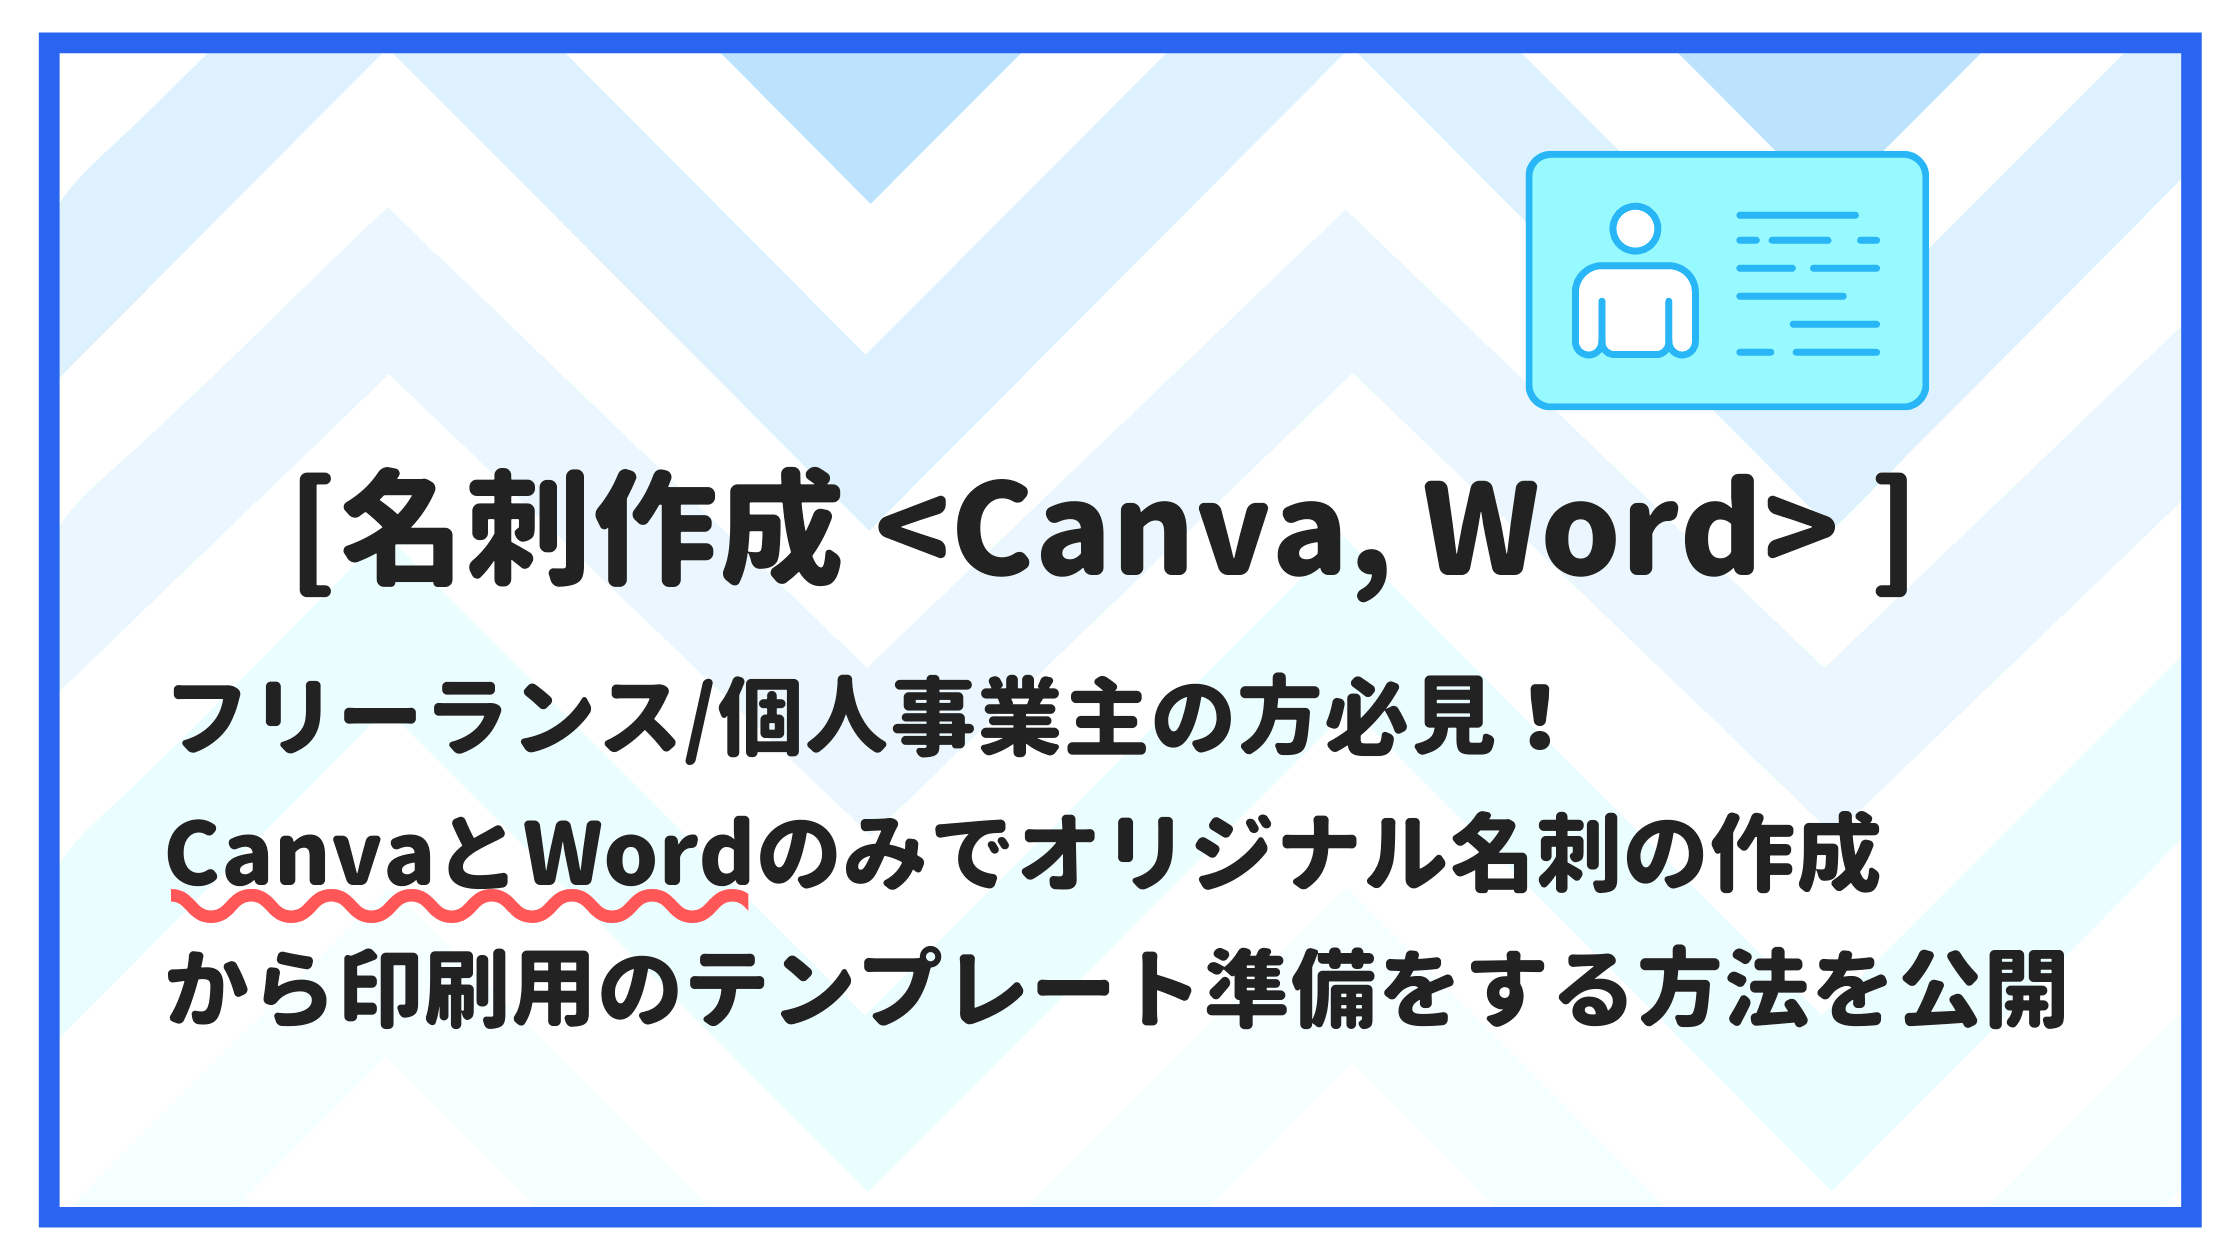 Canva Word 名刺作成から印刷までの手順紹介します ウツボウtech